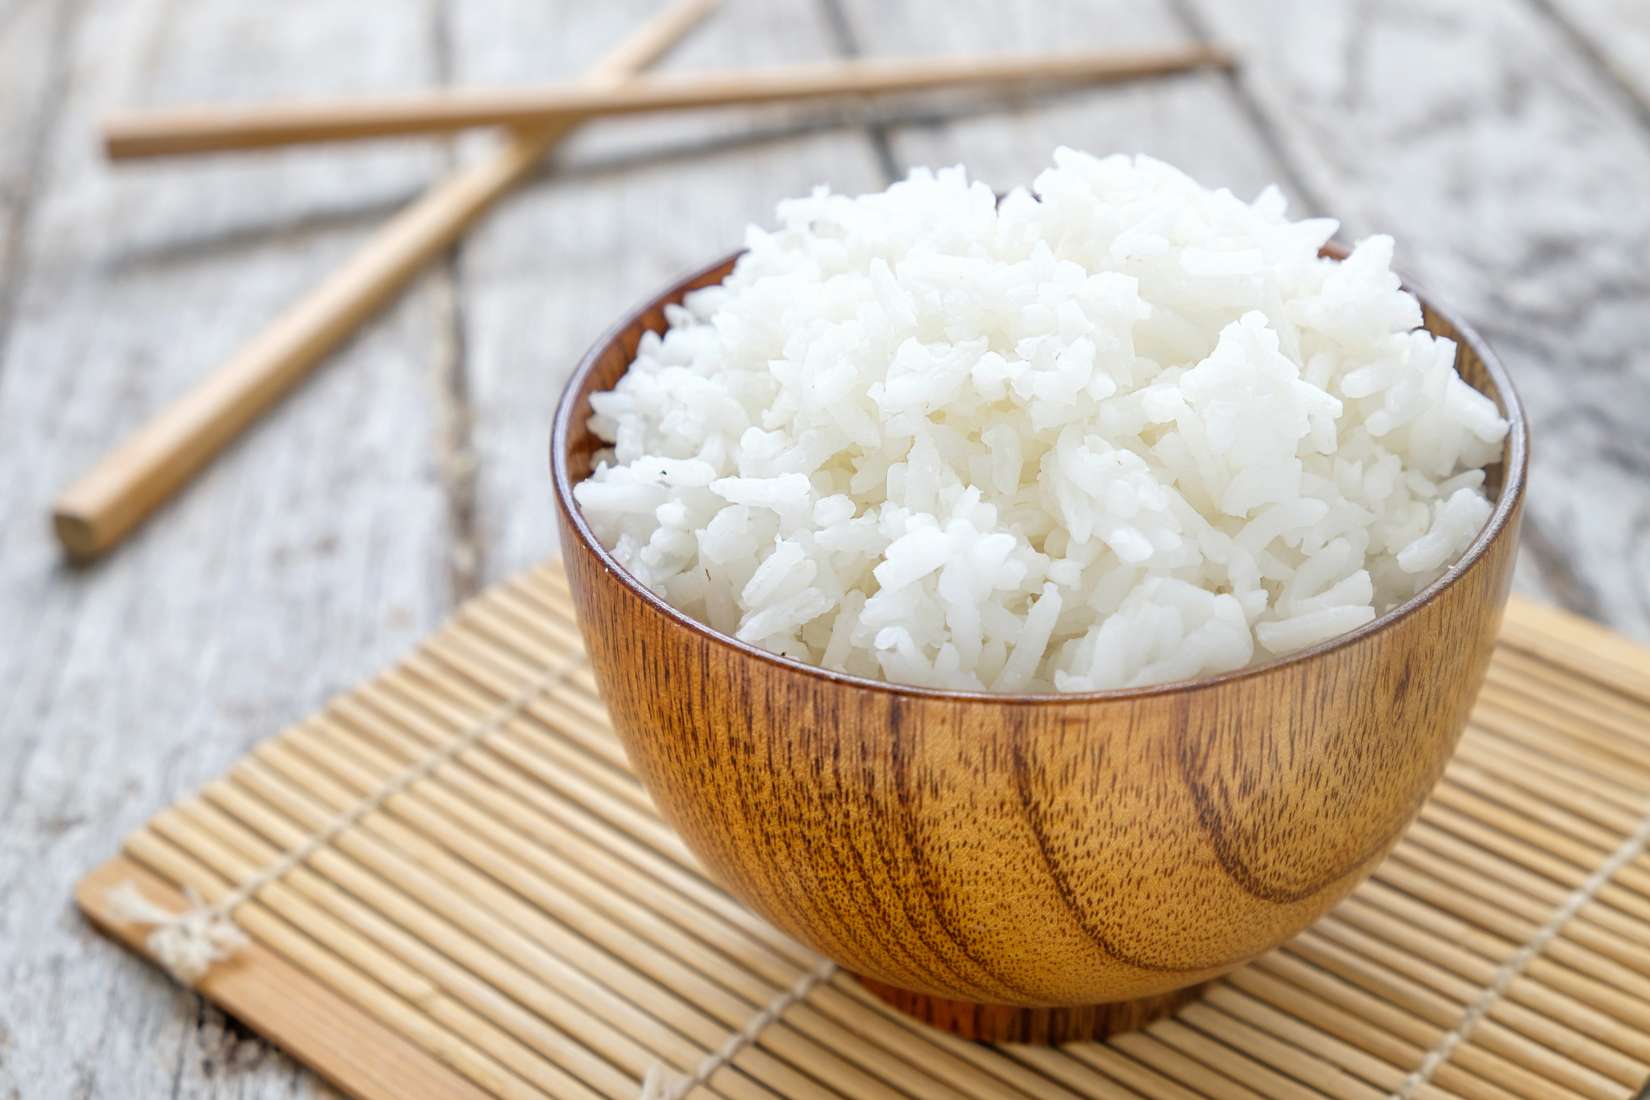 Contigo® Enriched Long Grain White Rice 4% Broken